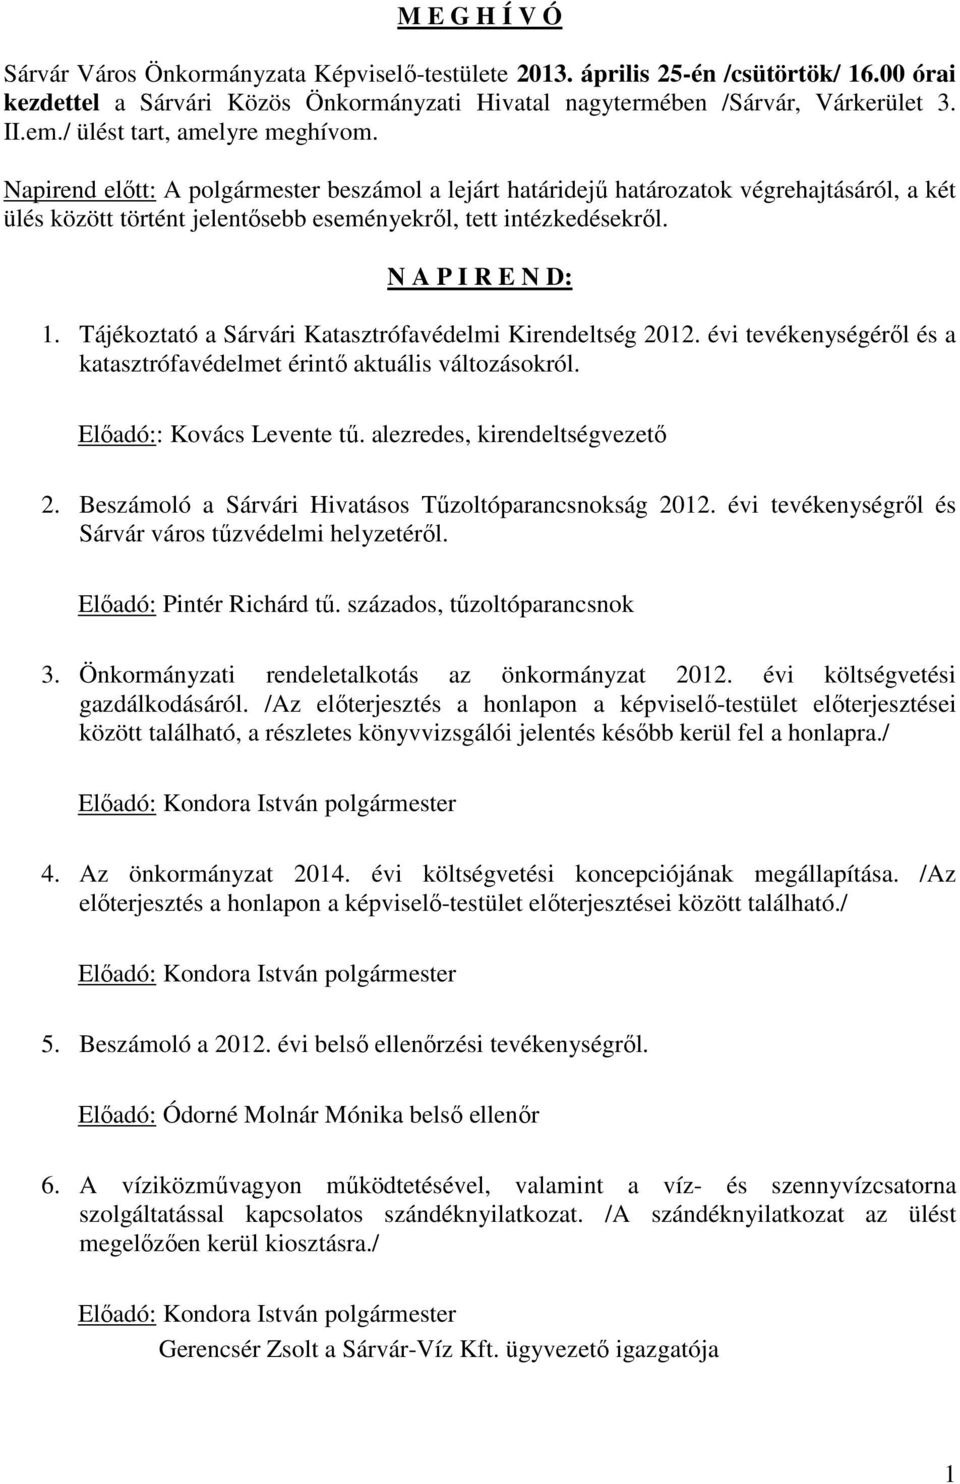 N A P I R E N D: 1. Tájékoztató a Sárvári Katasztrófavédelmi Kirendeltség 2012. évi tevékenységéről és a katasztrófavédelmet érintő aktuális változásokról. Előadó:: Kovács Levente tű.